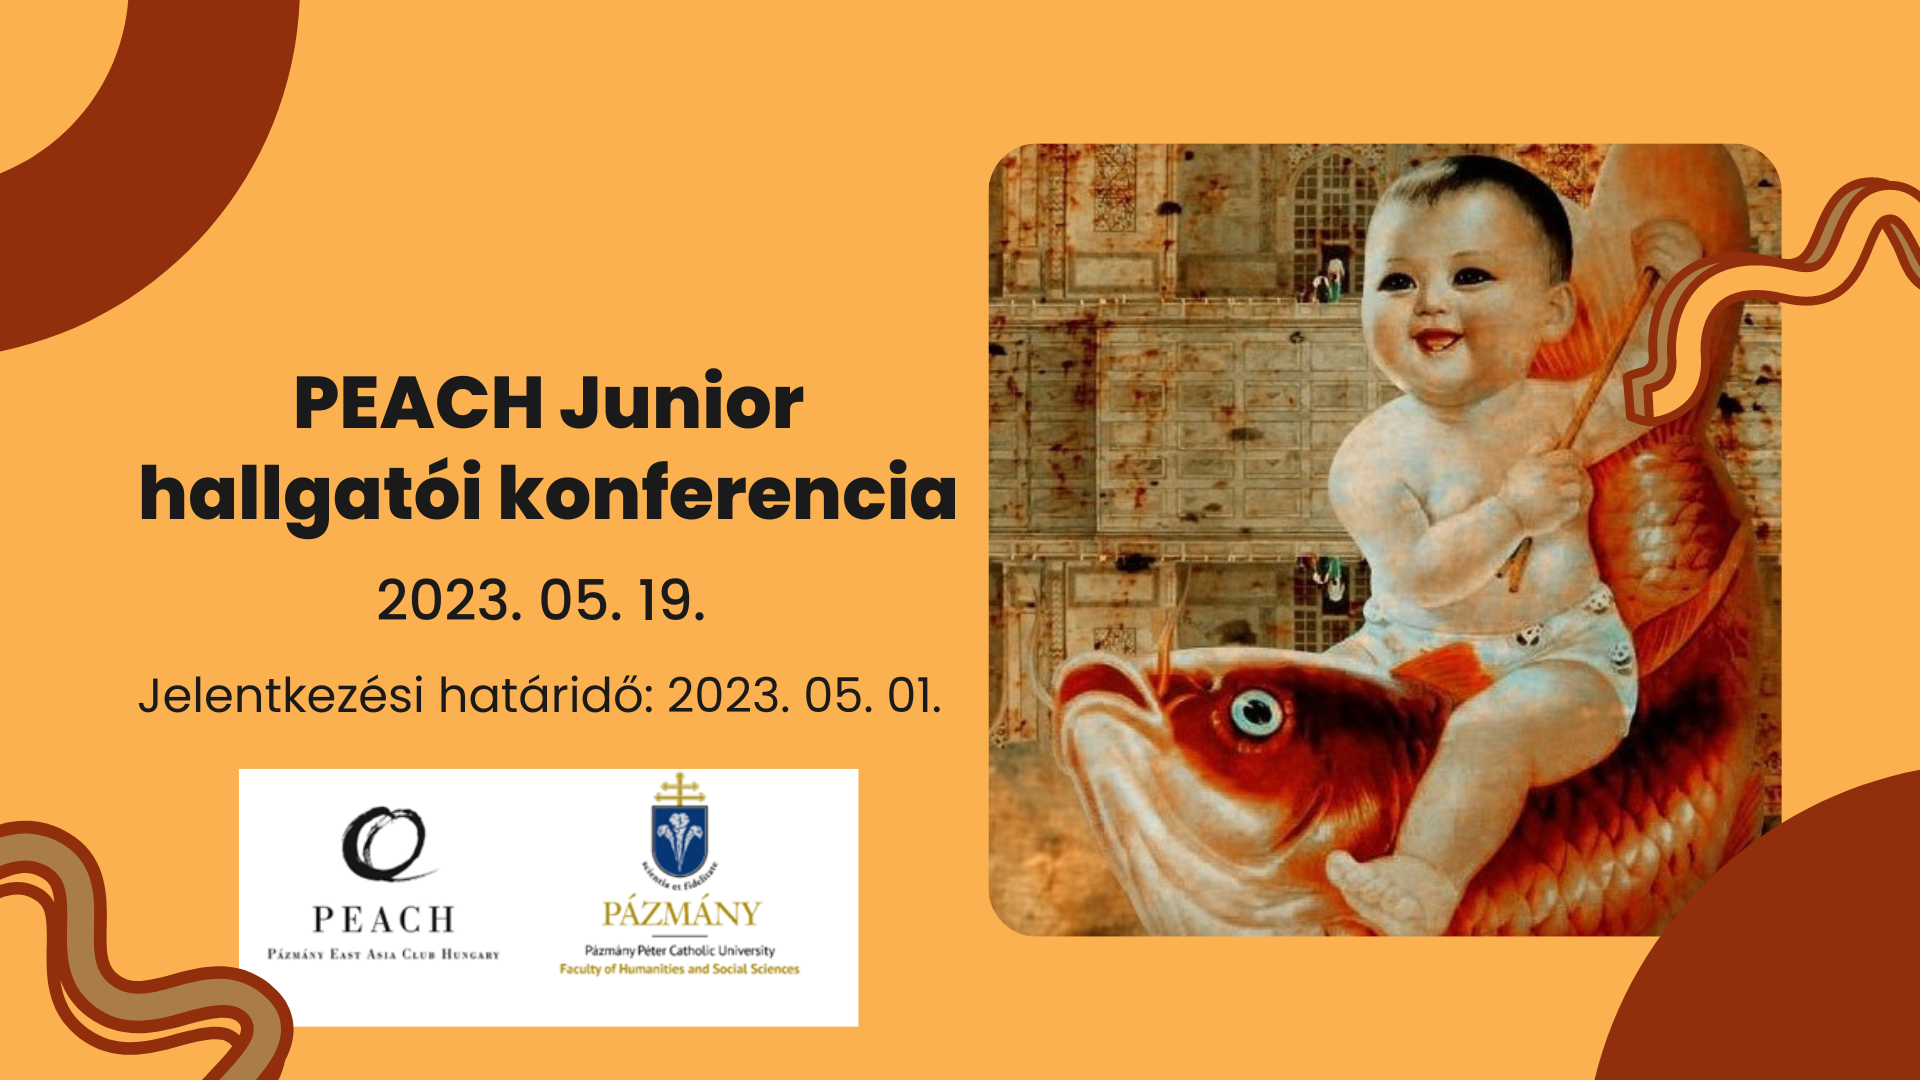 PEACH Junior hallgatói konferencia - program és absztraktok